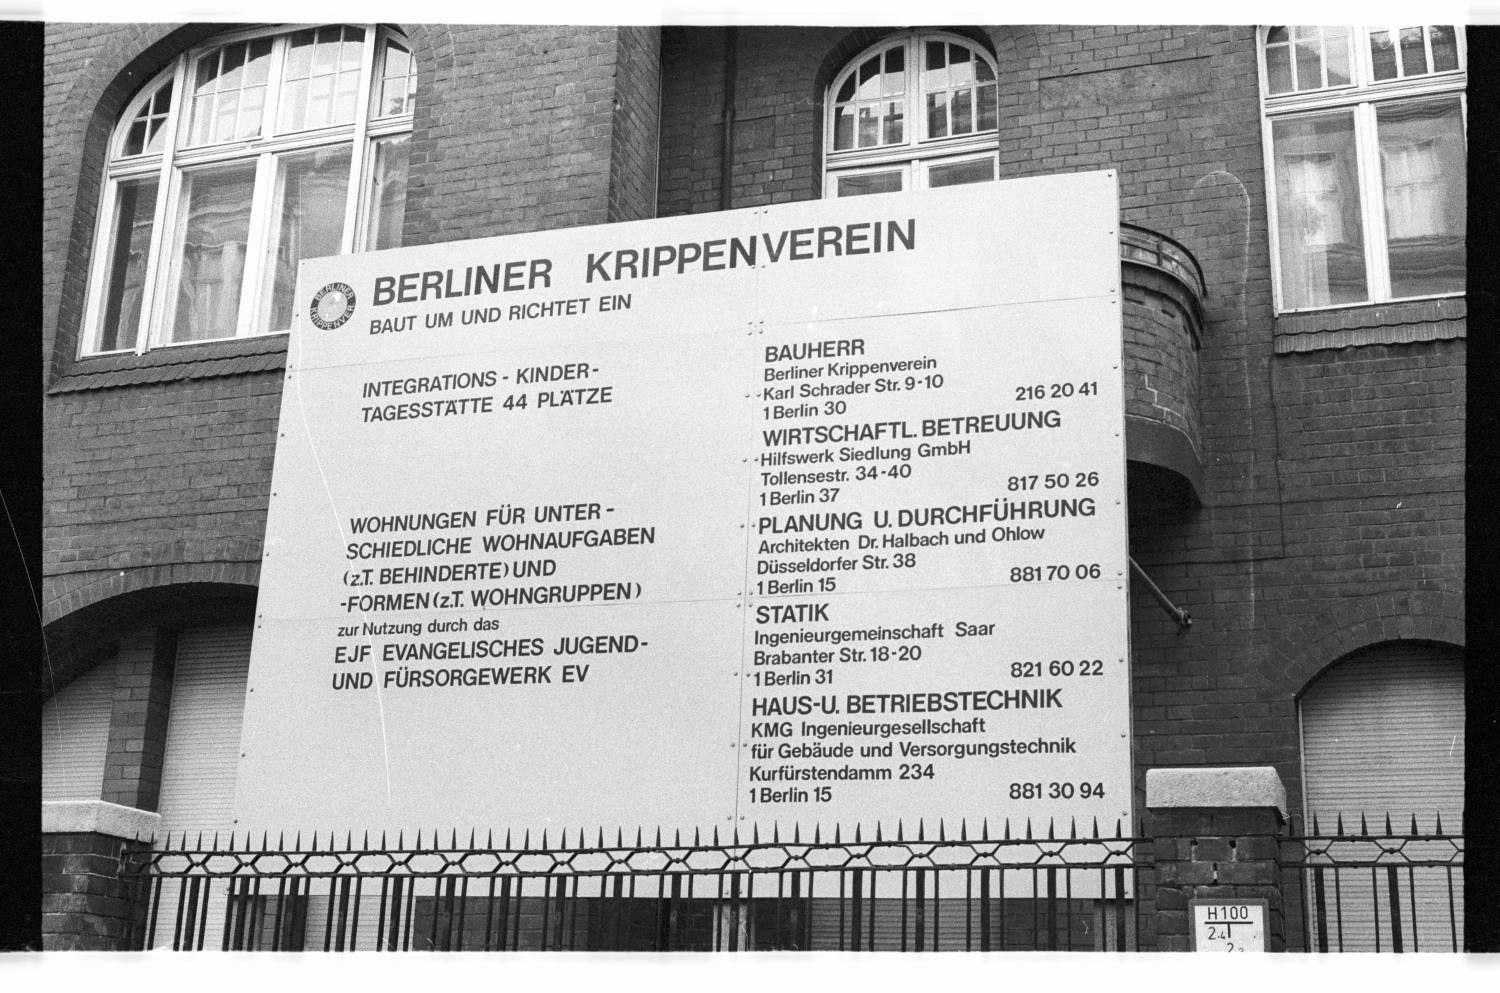 Kleinbildnegative: Informationstafel, Karl-Schrader-Klinik, 1983 (Museen Tempelhof-Schöneberg/Jürgen Henschel RR-F)